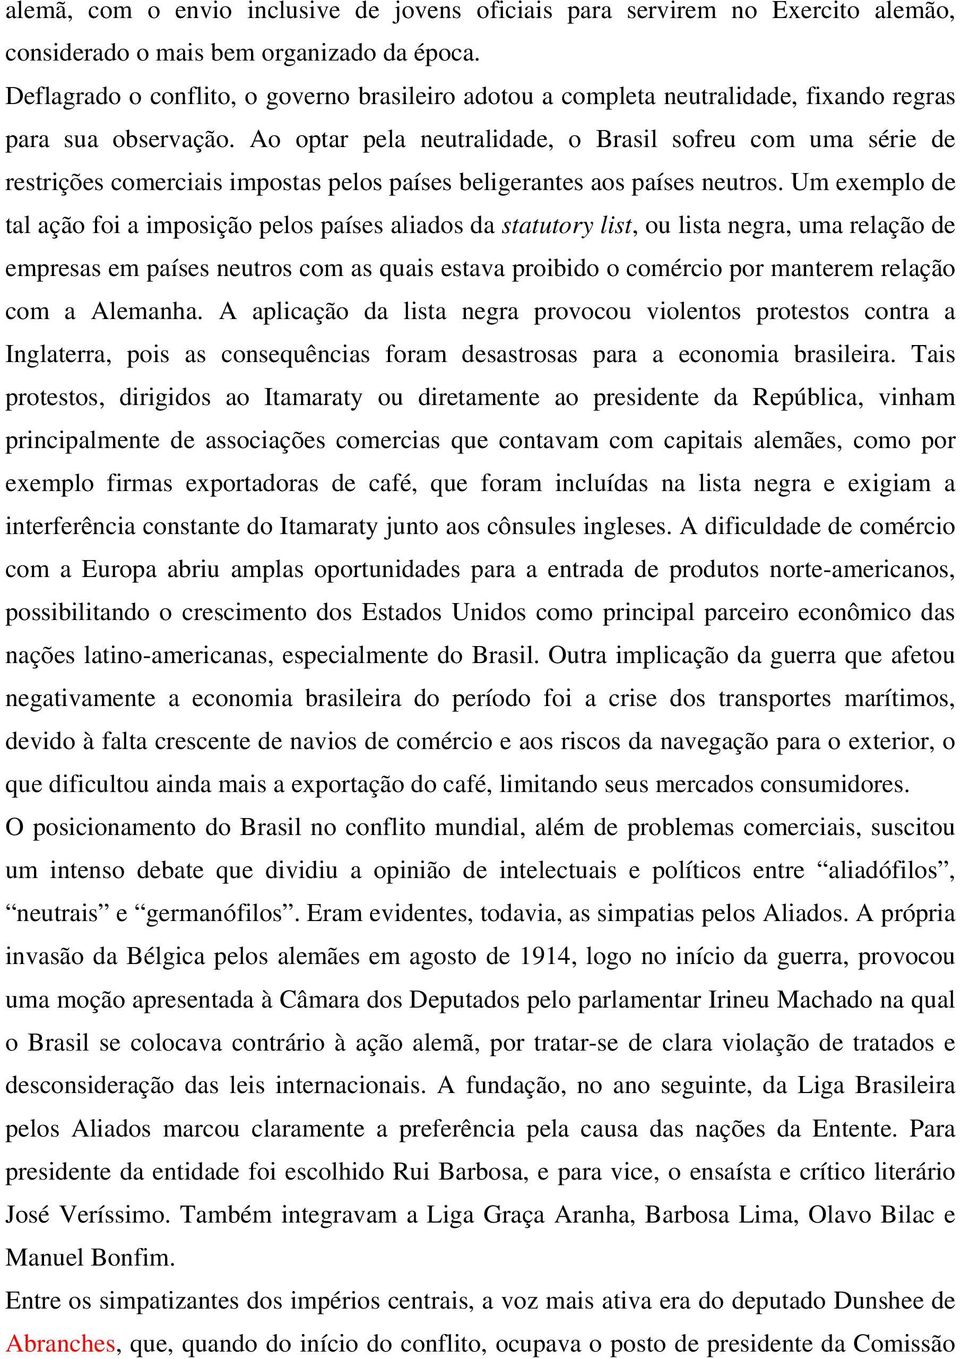 Ao optar pela neutralidade, o Brasil sofreu com uma série de restrições comerciais impostas pelos países beligerantes aos países neutros.